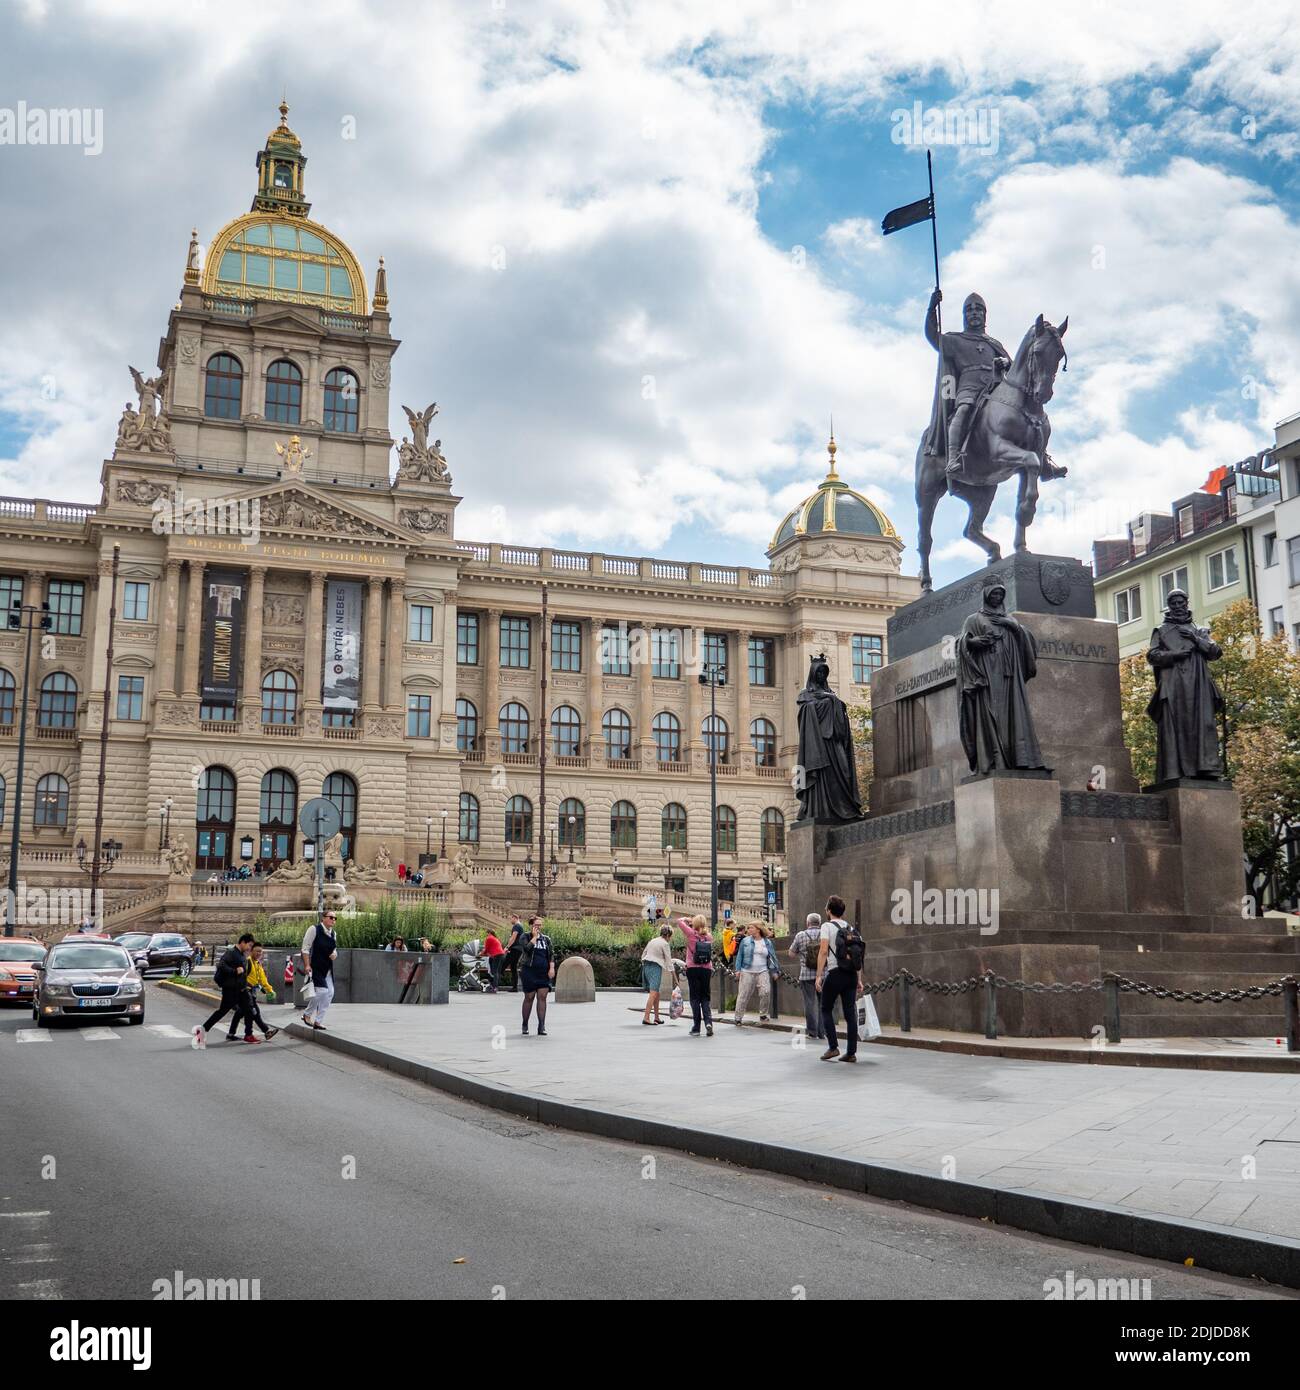 Musée national tchèque, Prague. La grande façade est ornée d'une statue de Saint-Venceslas au centre de la capitale de la République tchèque. Banque D'Images